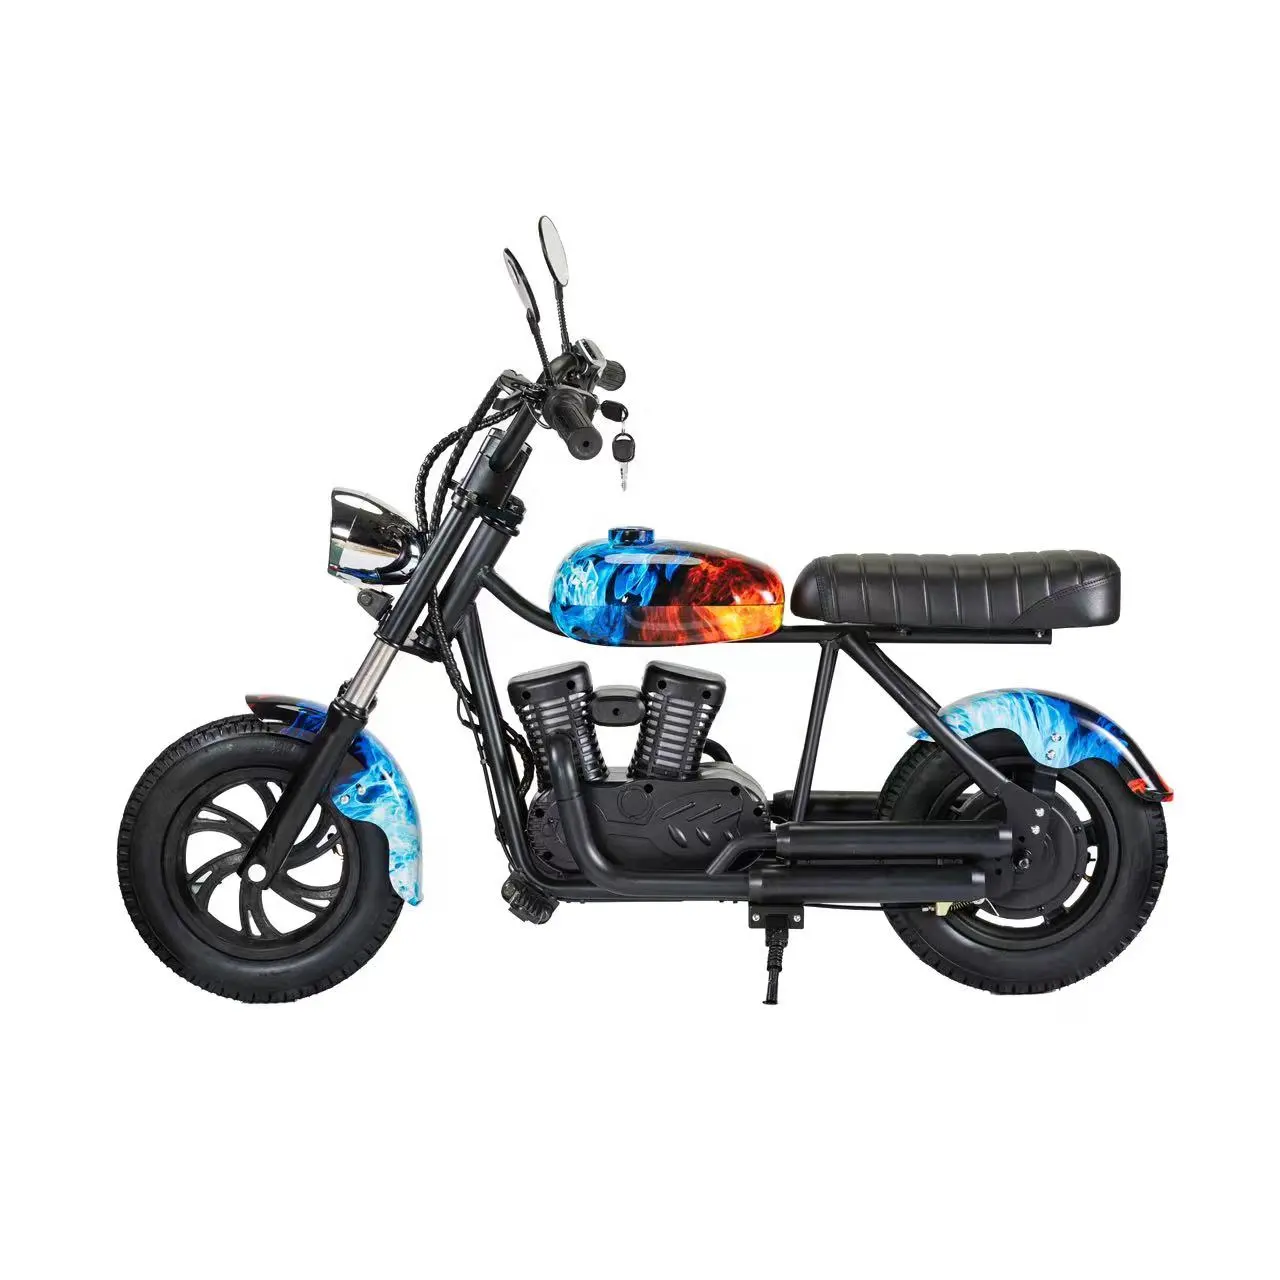 Haute qualité nouveau 180w 24V super électrique enfants dirt bike grande puissance pit bike motos motocross moto avec CE